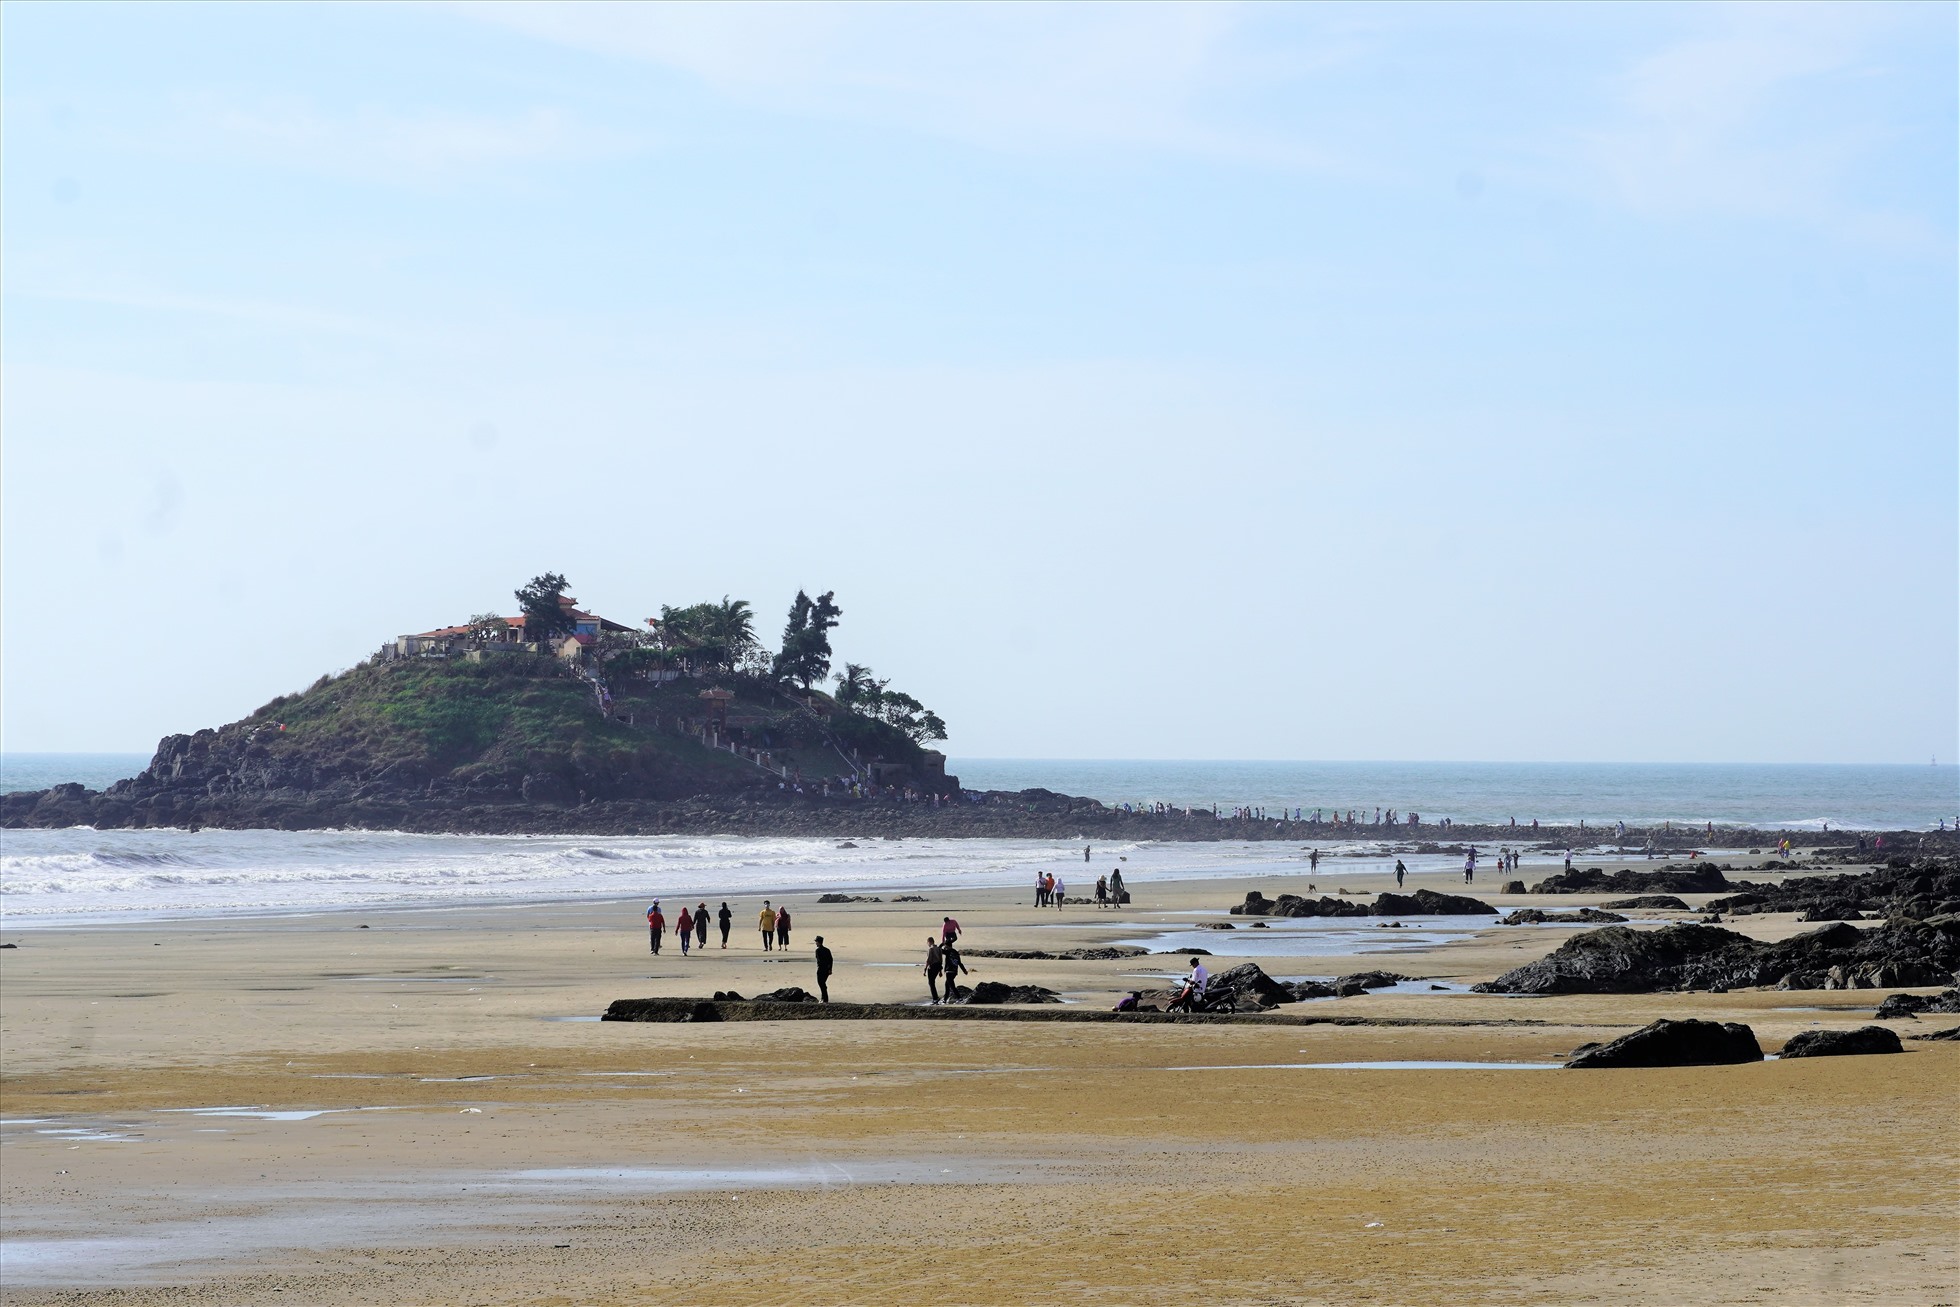 Mùng 1 Tết Nguyên đán 2023, cùng với đi lễ chùa, nhiều gia đình, du khách cũng nhân dịp nước thủy triều rút để vượt qua bãi biển đến viếng ngôi miếu trên đảo Hòn Bà cầu an. Ảnh: Thành An